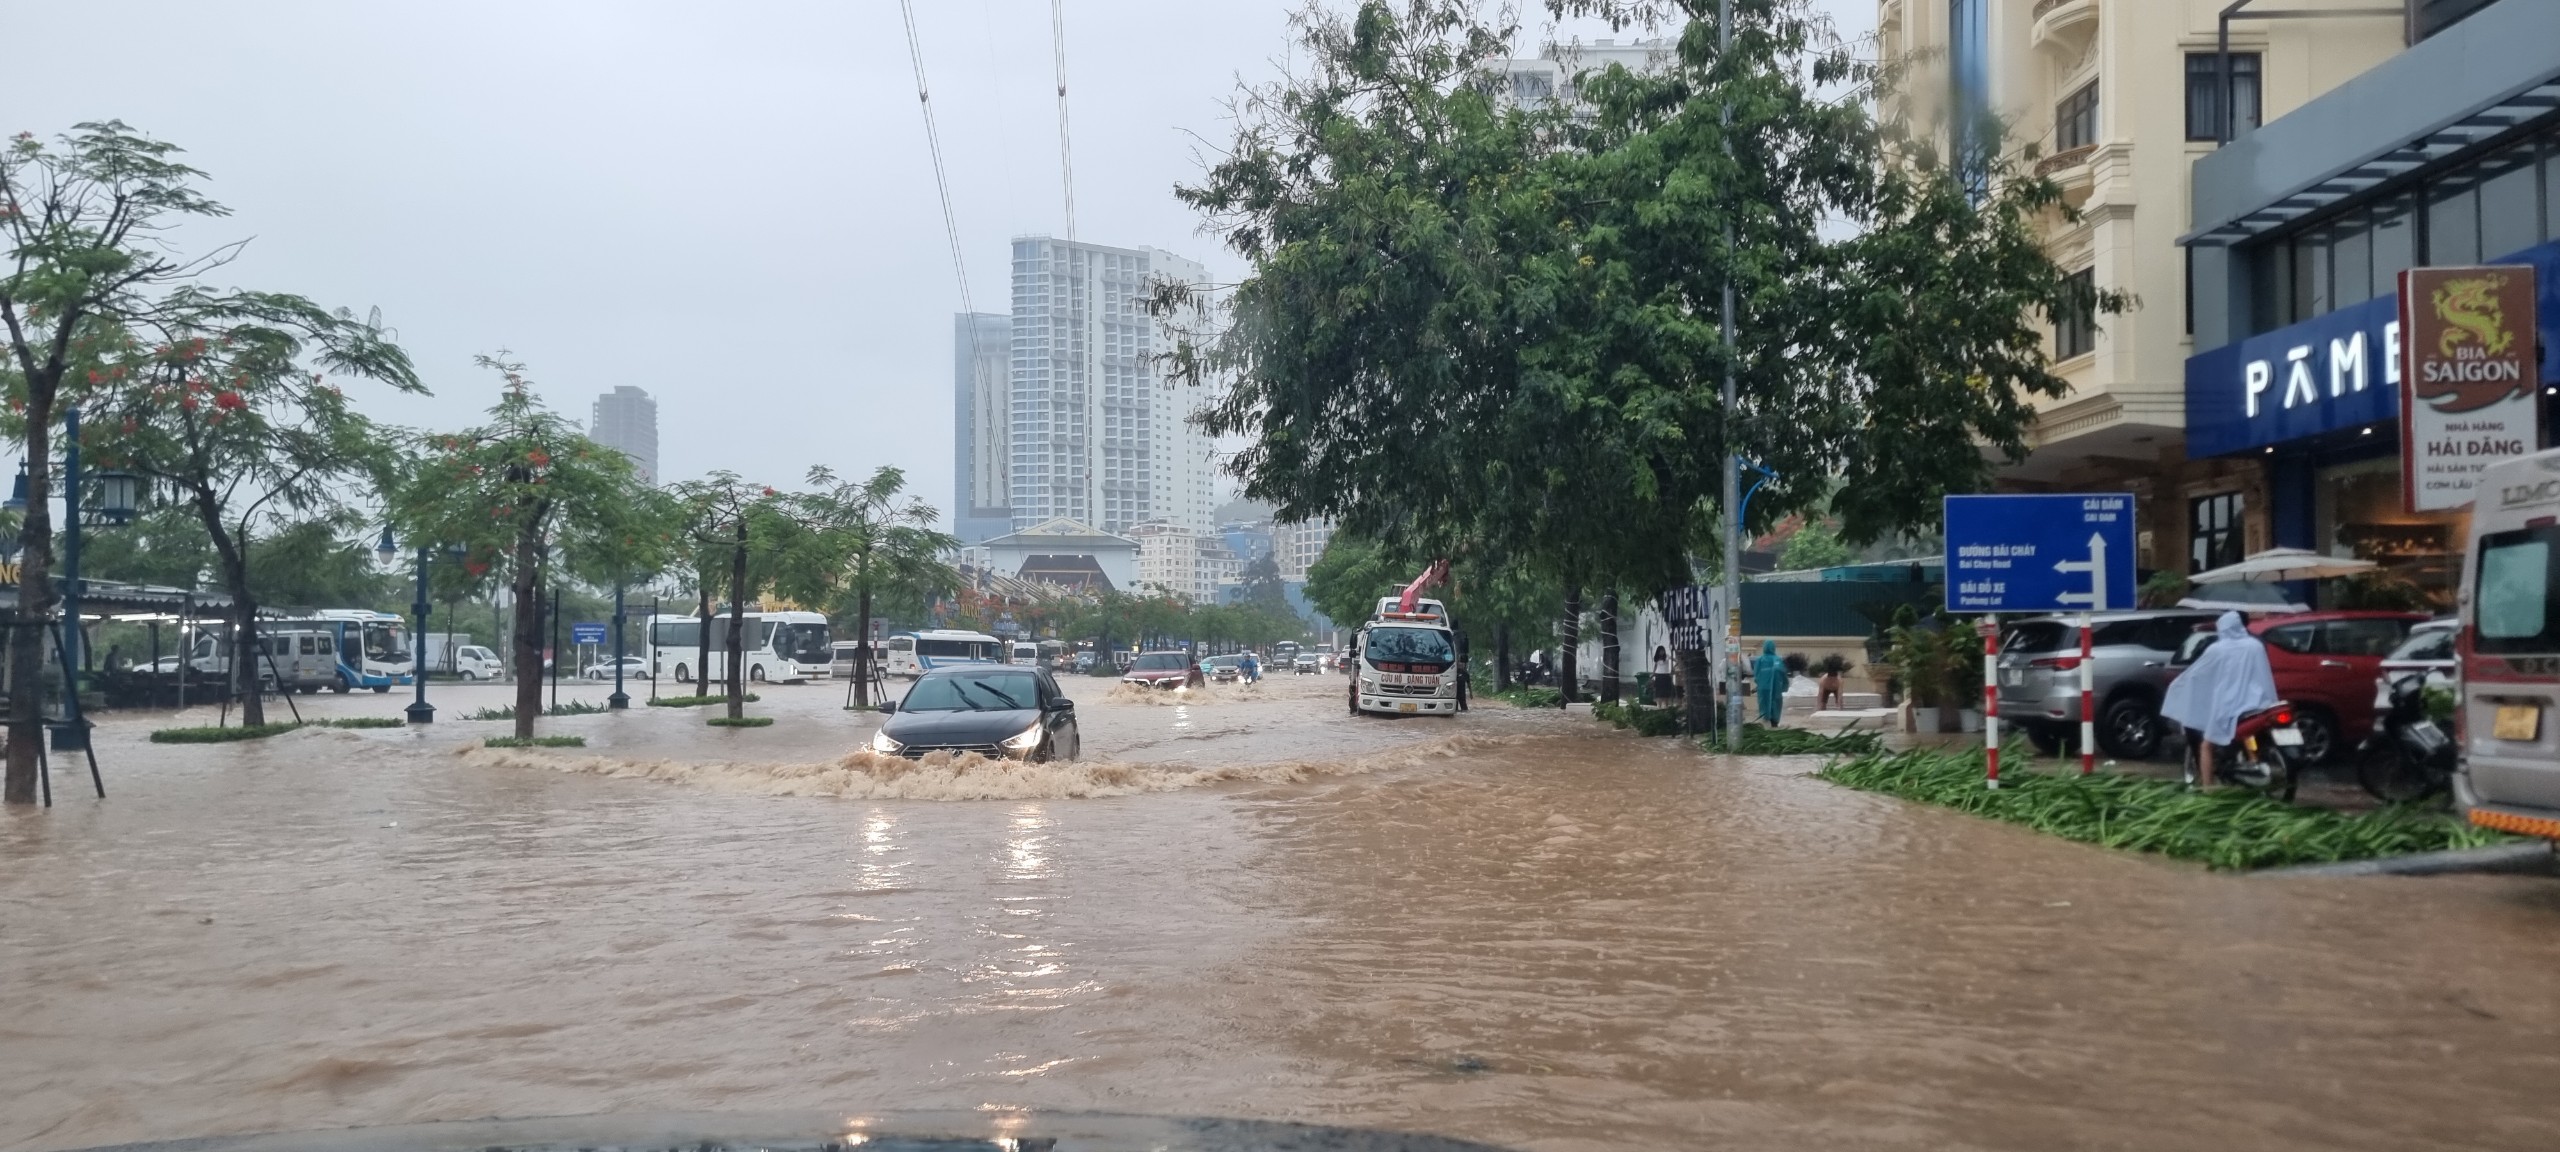 Ngập lụt tại đường Hạ Long, phường Bãi Cháy thành phố Hạ Long khiến các phương tiện di chuyển khó khăn.